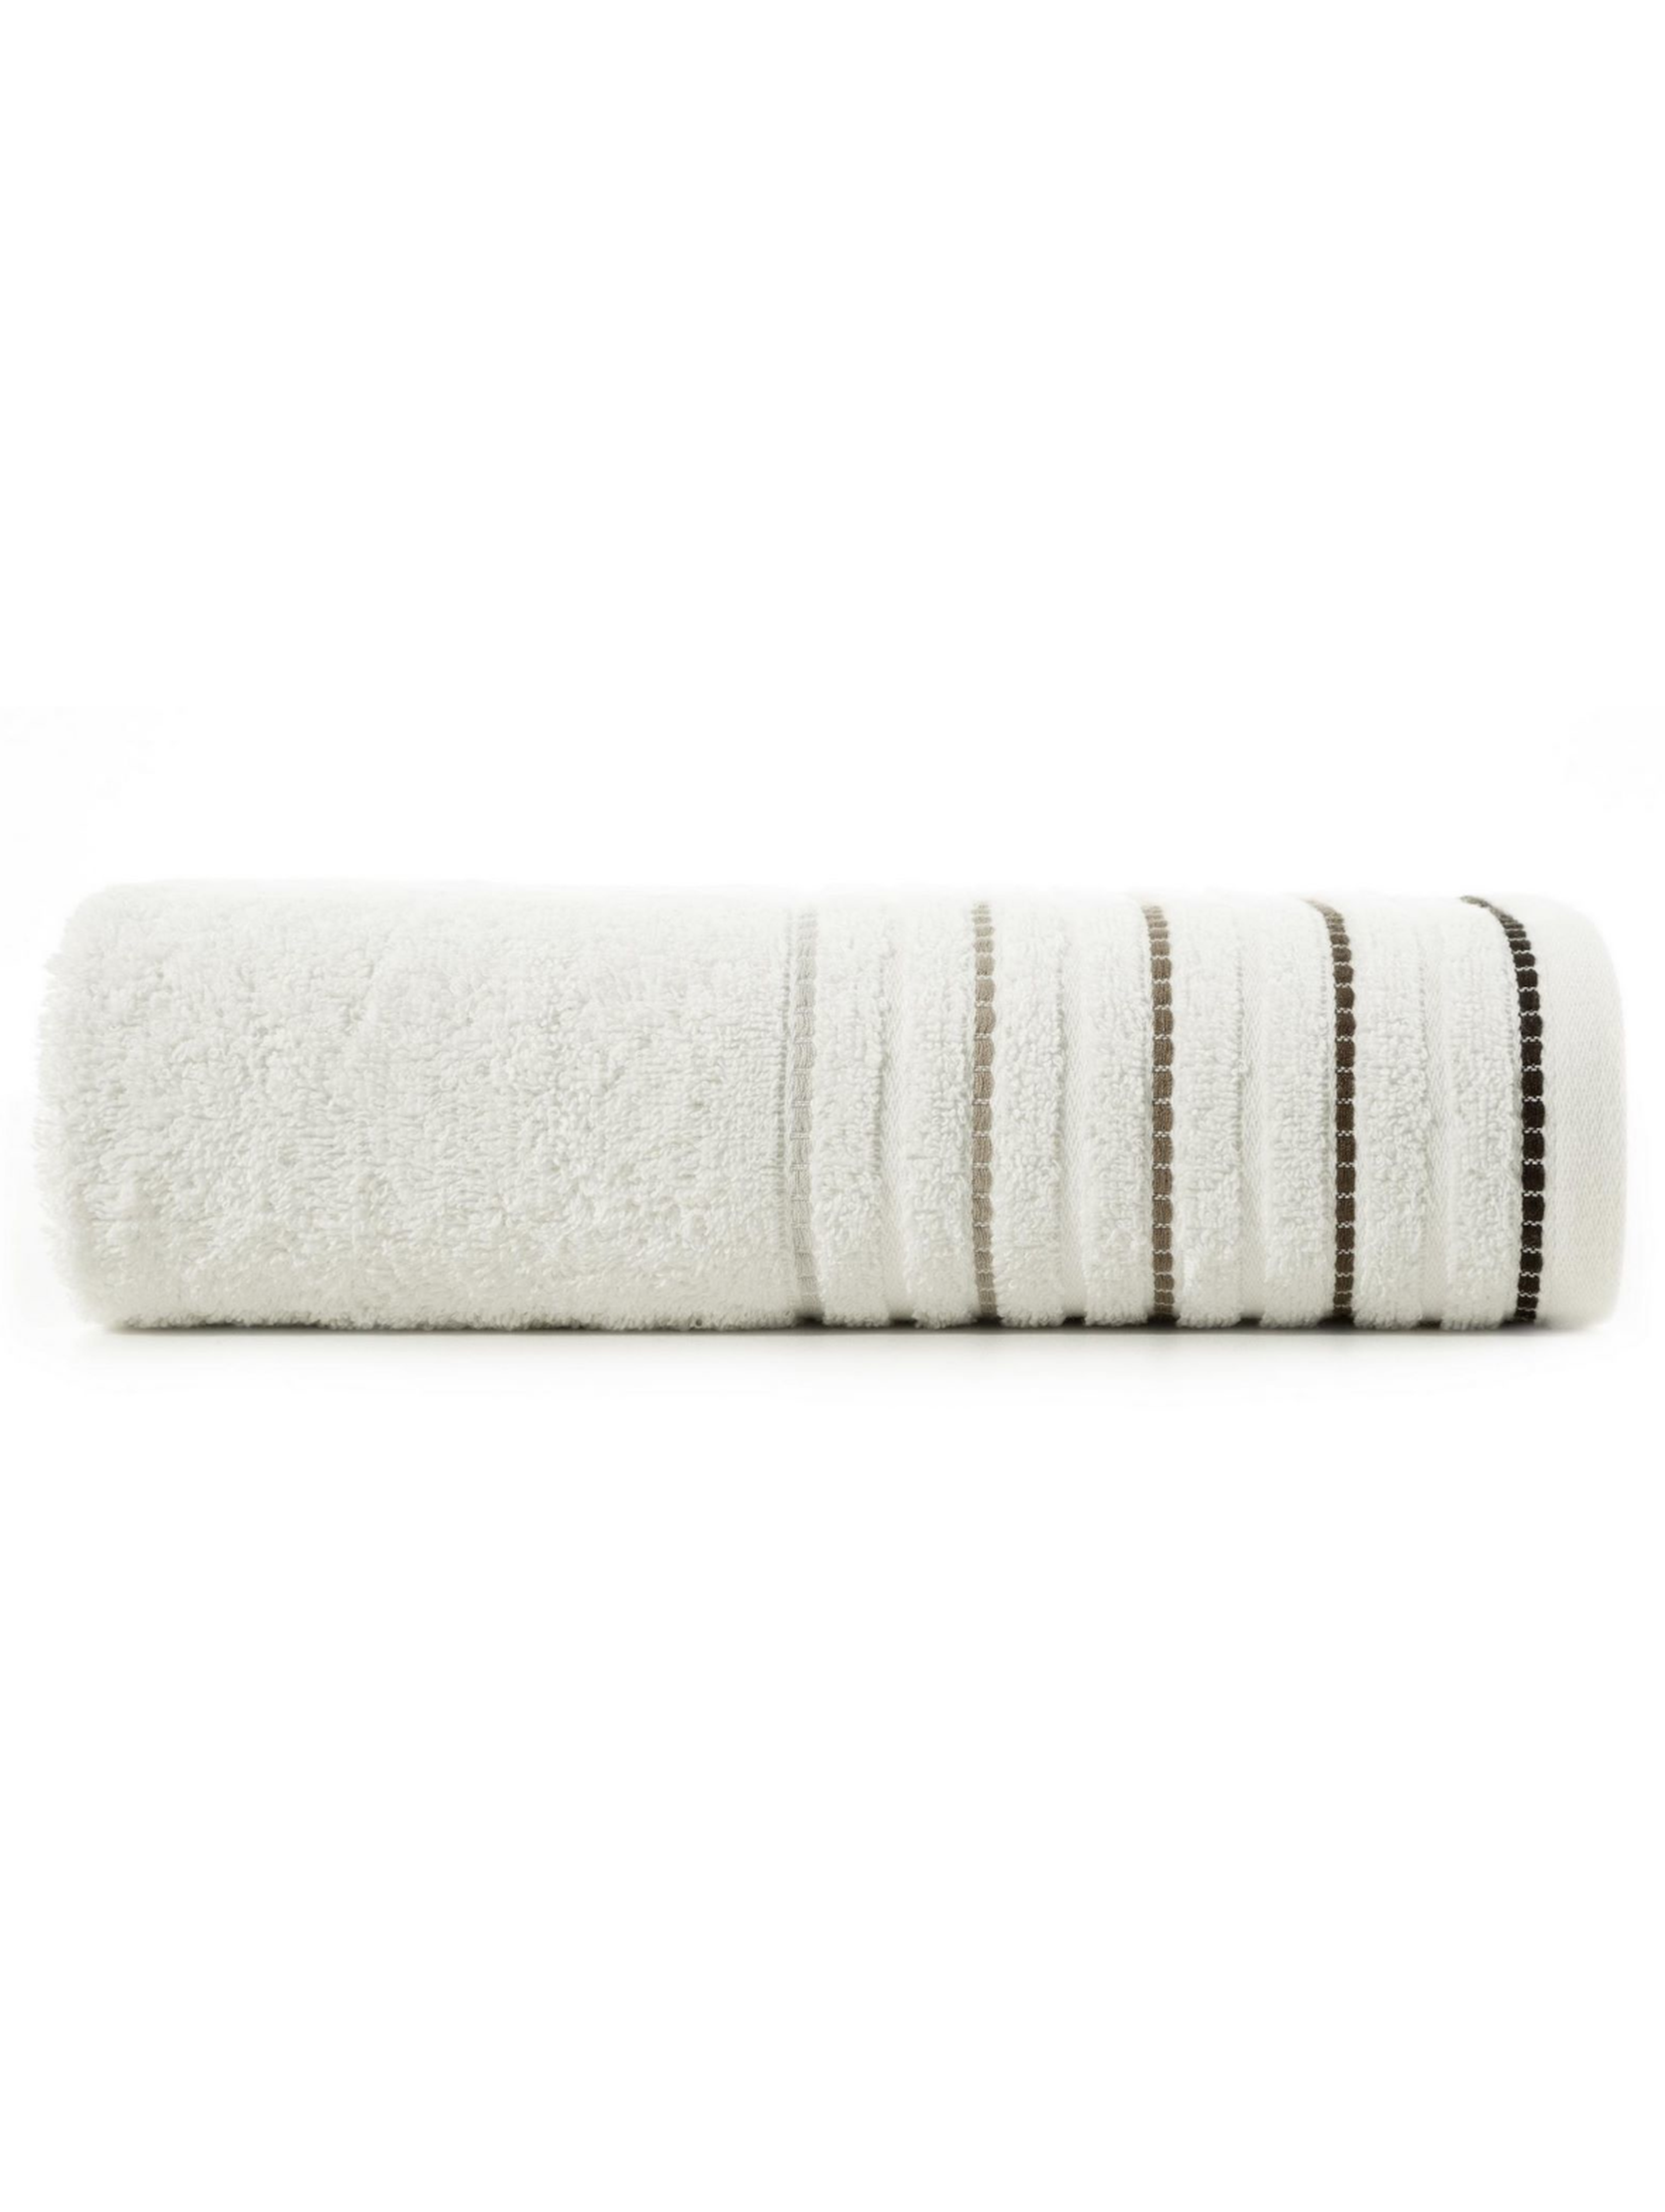 Ręcznik d91 iza (01) 70x140 cm kremowy